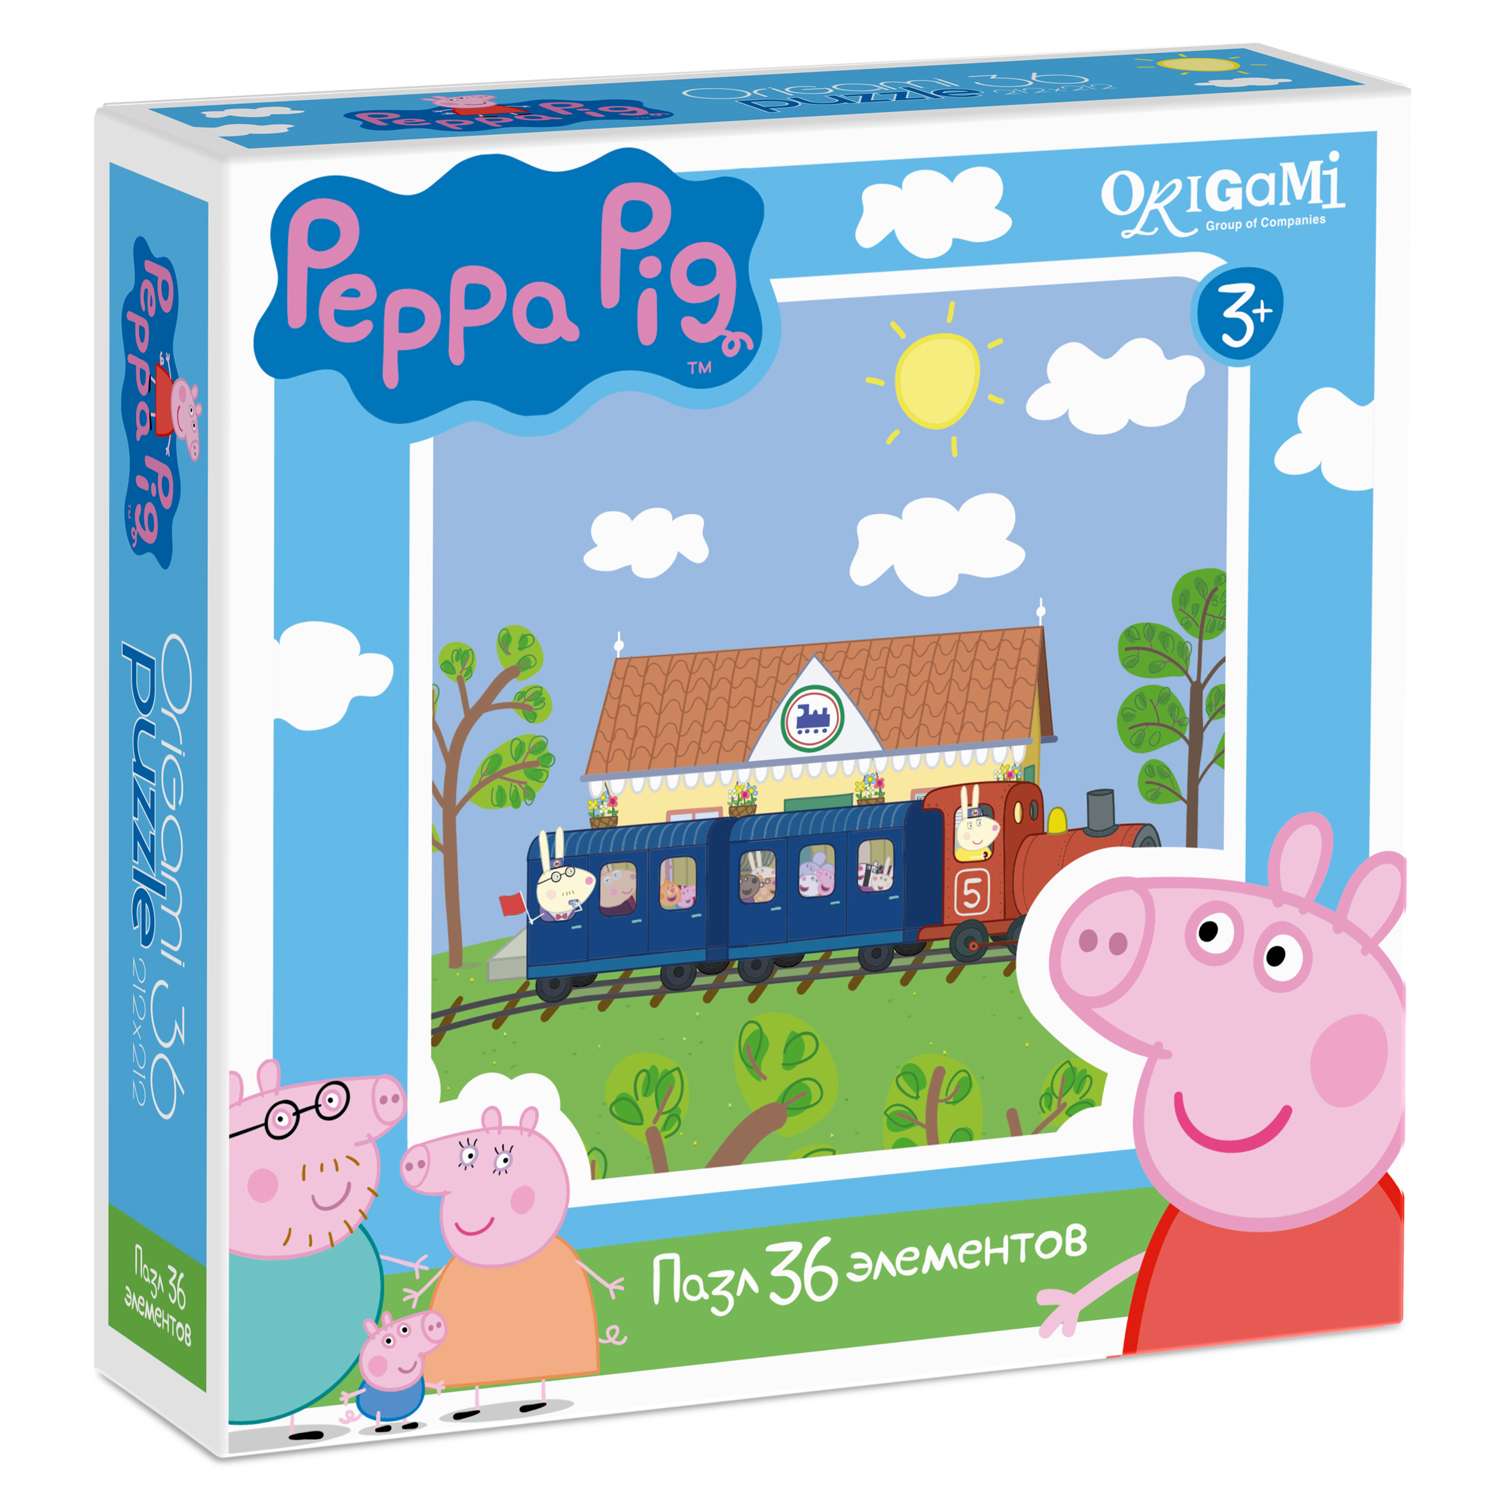 Пазлы ORIGAMI Peppa Pig 36 элементов в ассортименте - фото 2